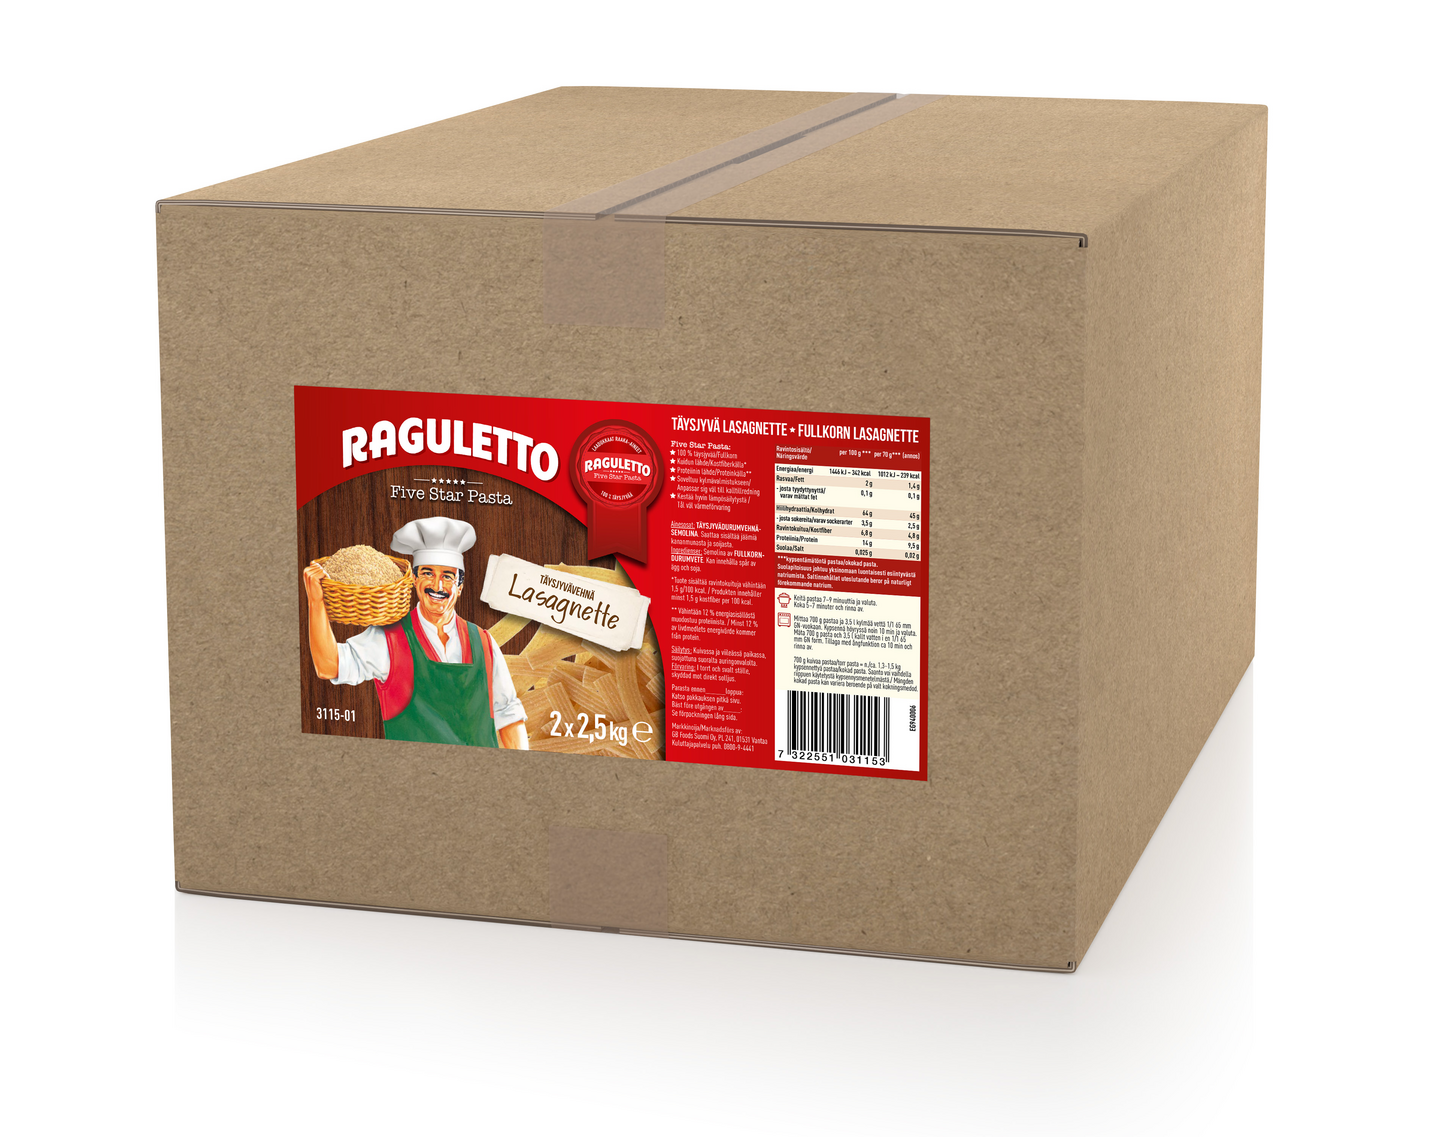 Raguletto täysjyvä lasagnette 2x3kg